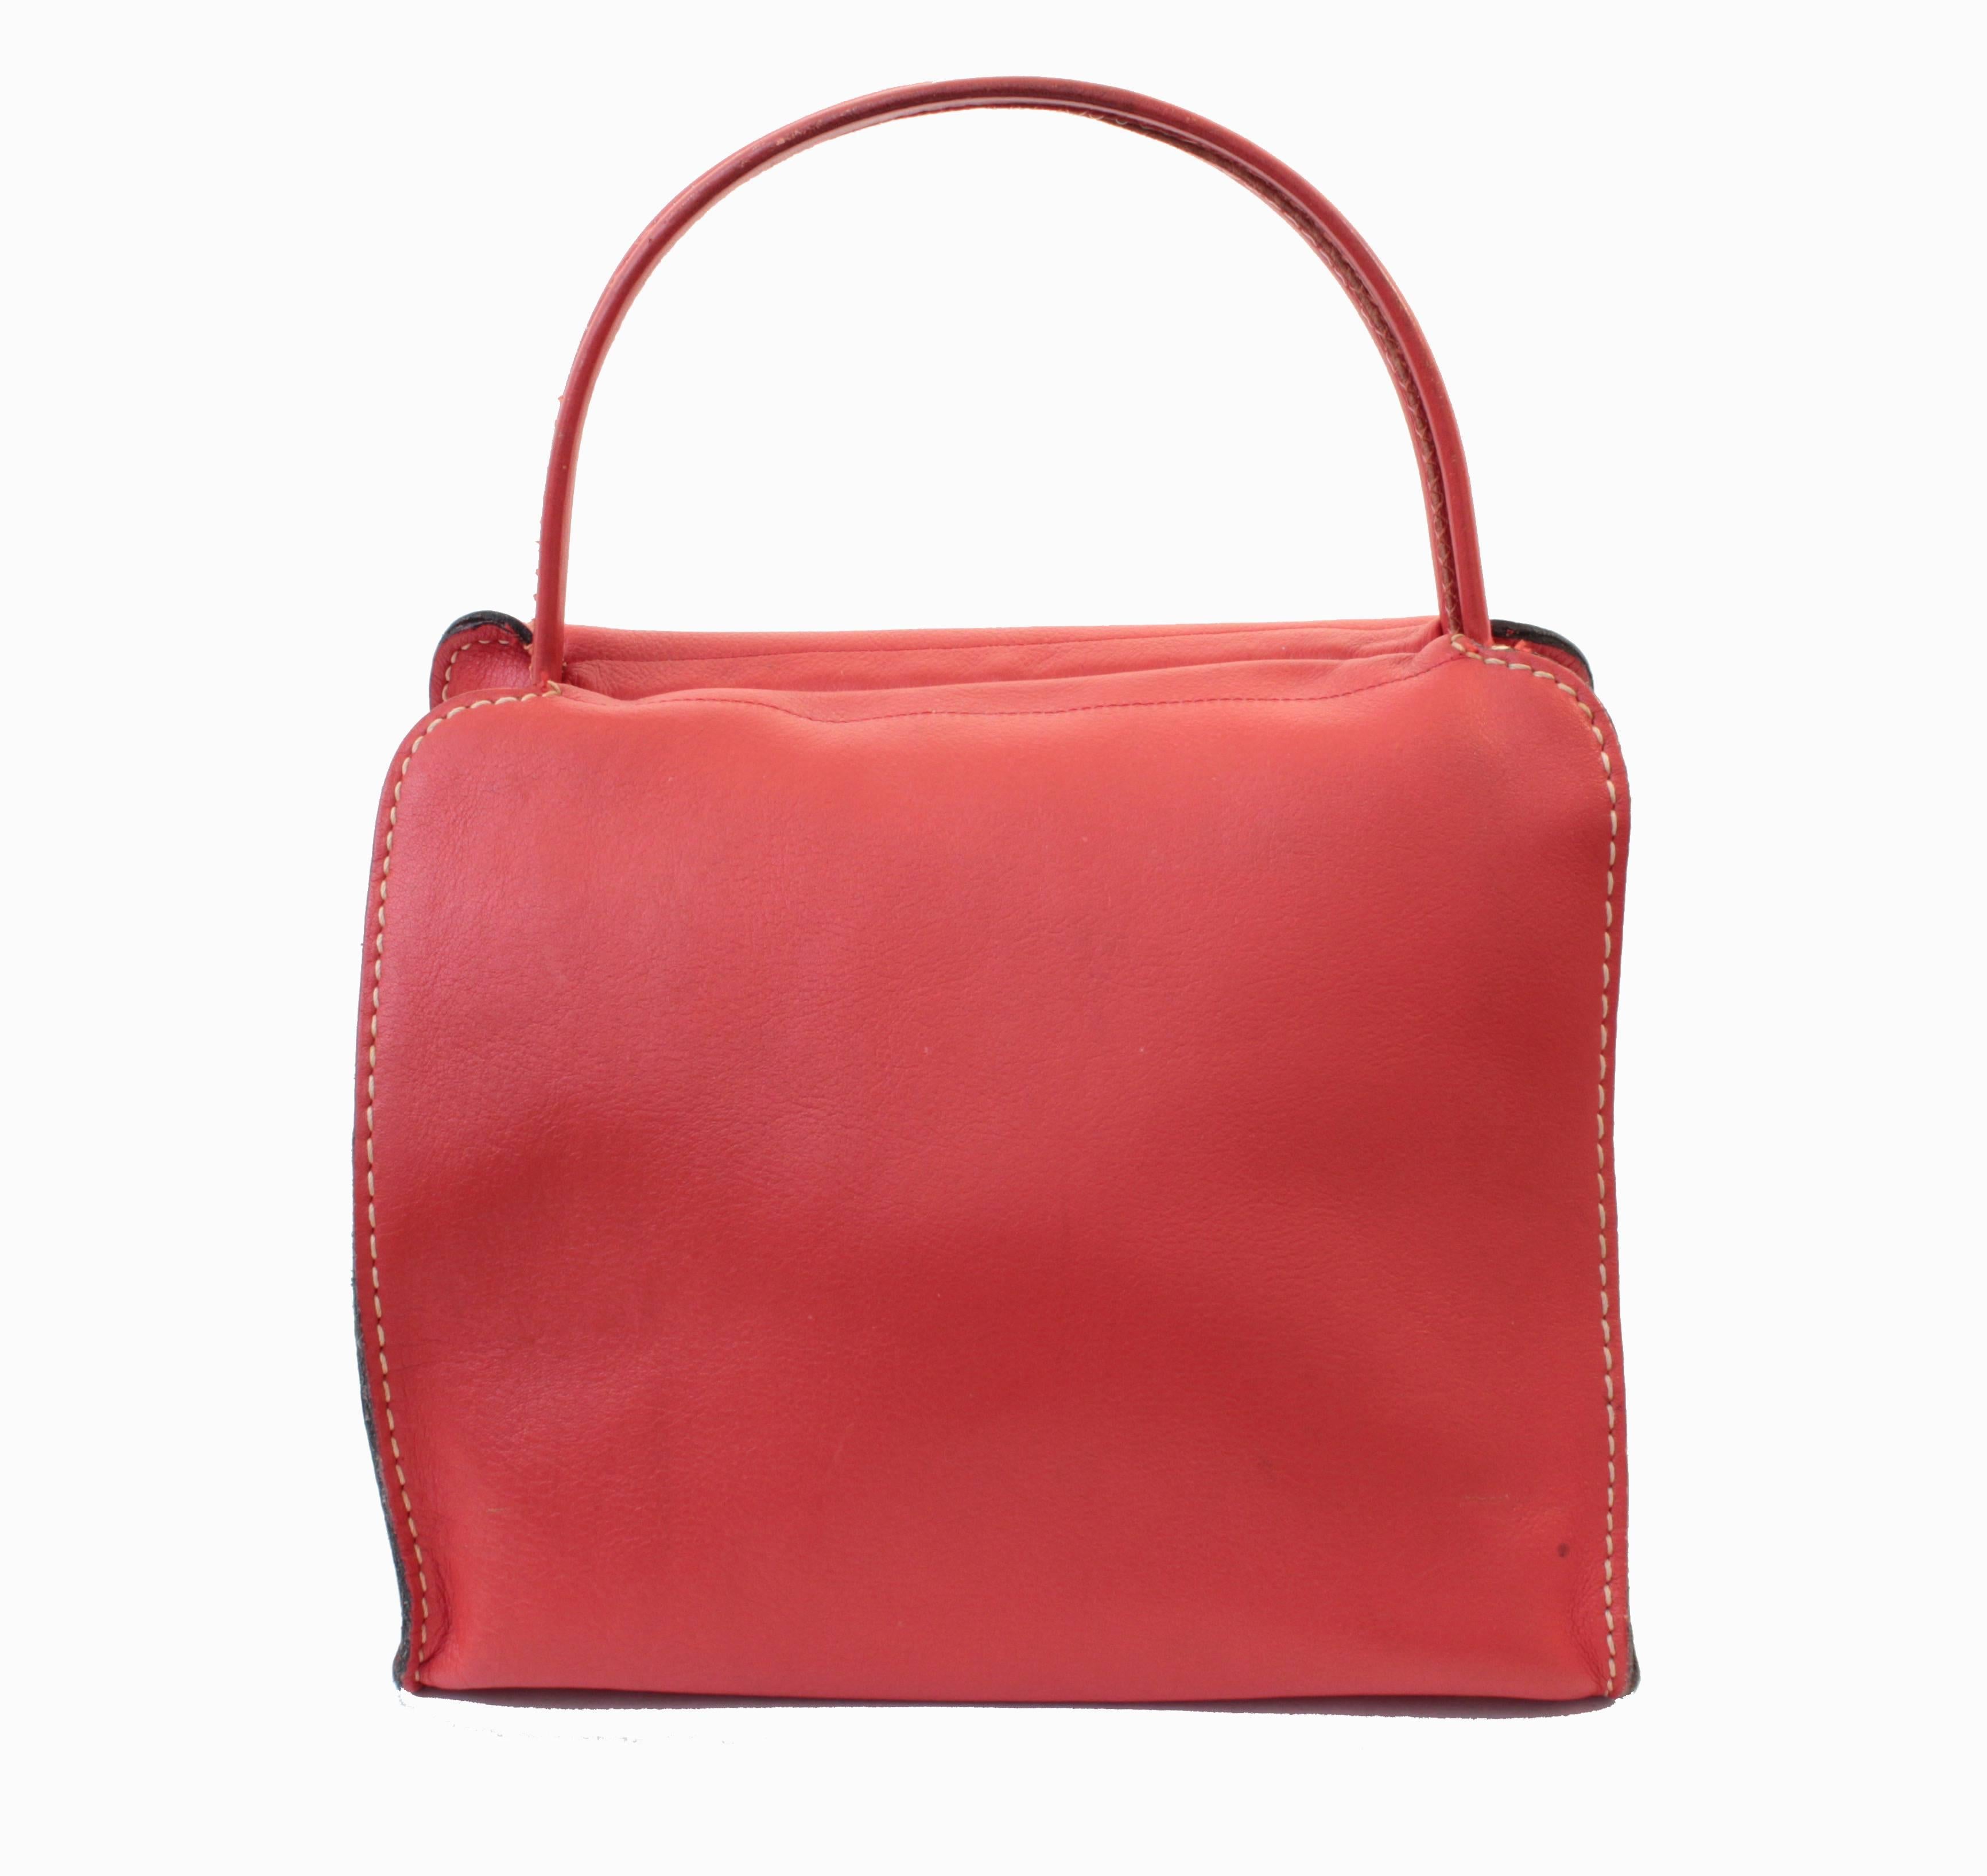 Bonnie Cashin pour Coach - Sac fourre-tout en cuir rouge avec cadre ciseau, sac cabas, 1966 2